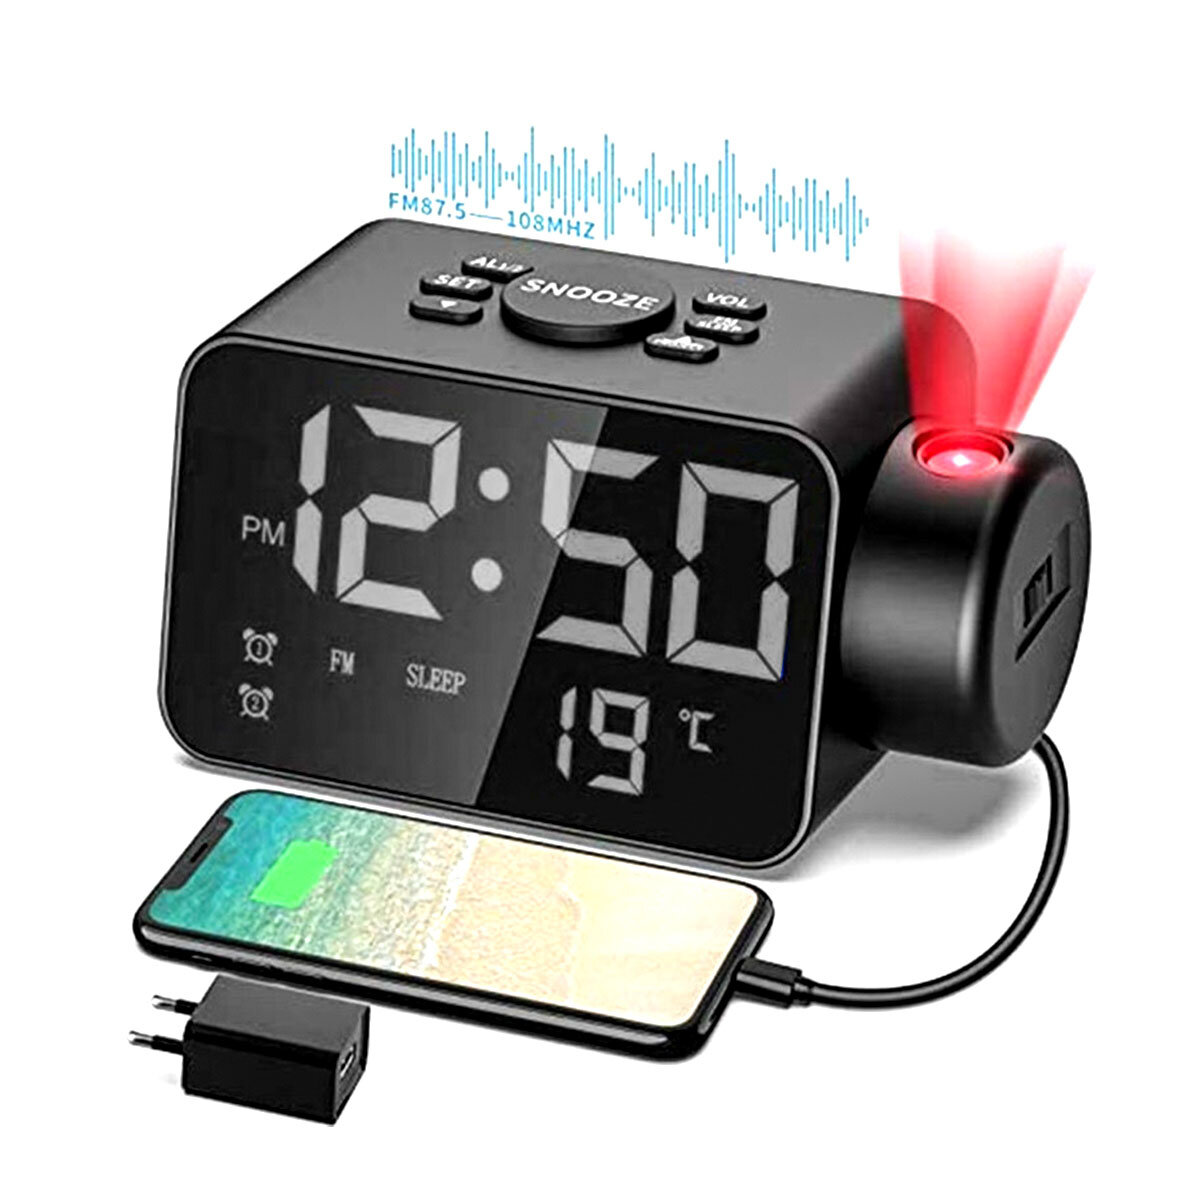 

Светодиодный будильник Часы USB-аккумулятор FM Радио Режим повтора Электронный будильник Часы Время Температура Дисплей